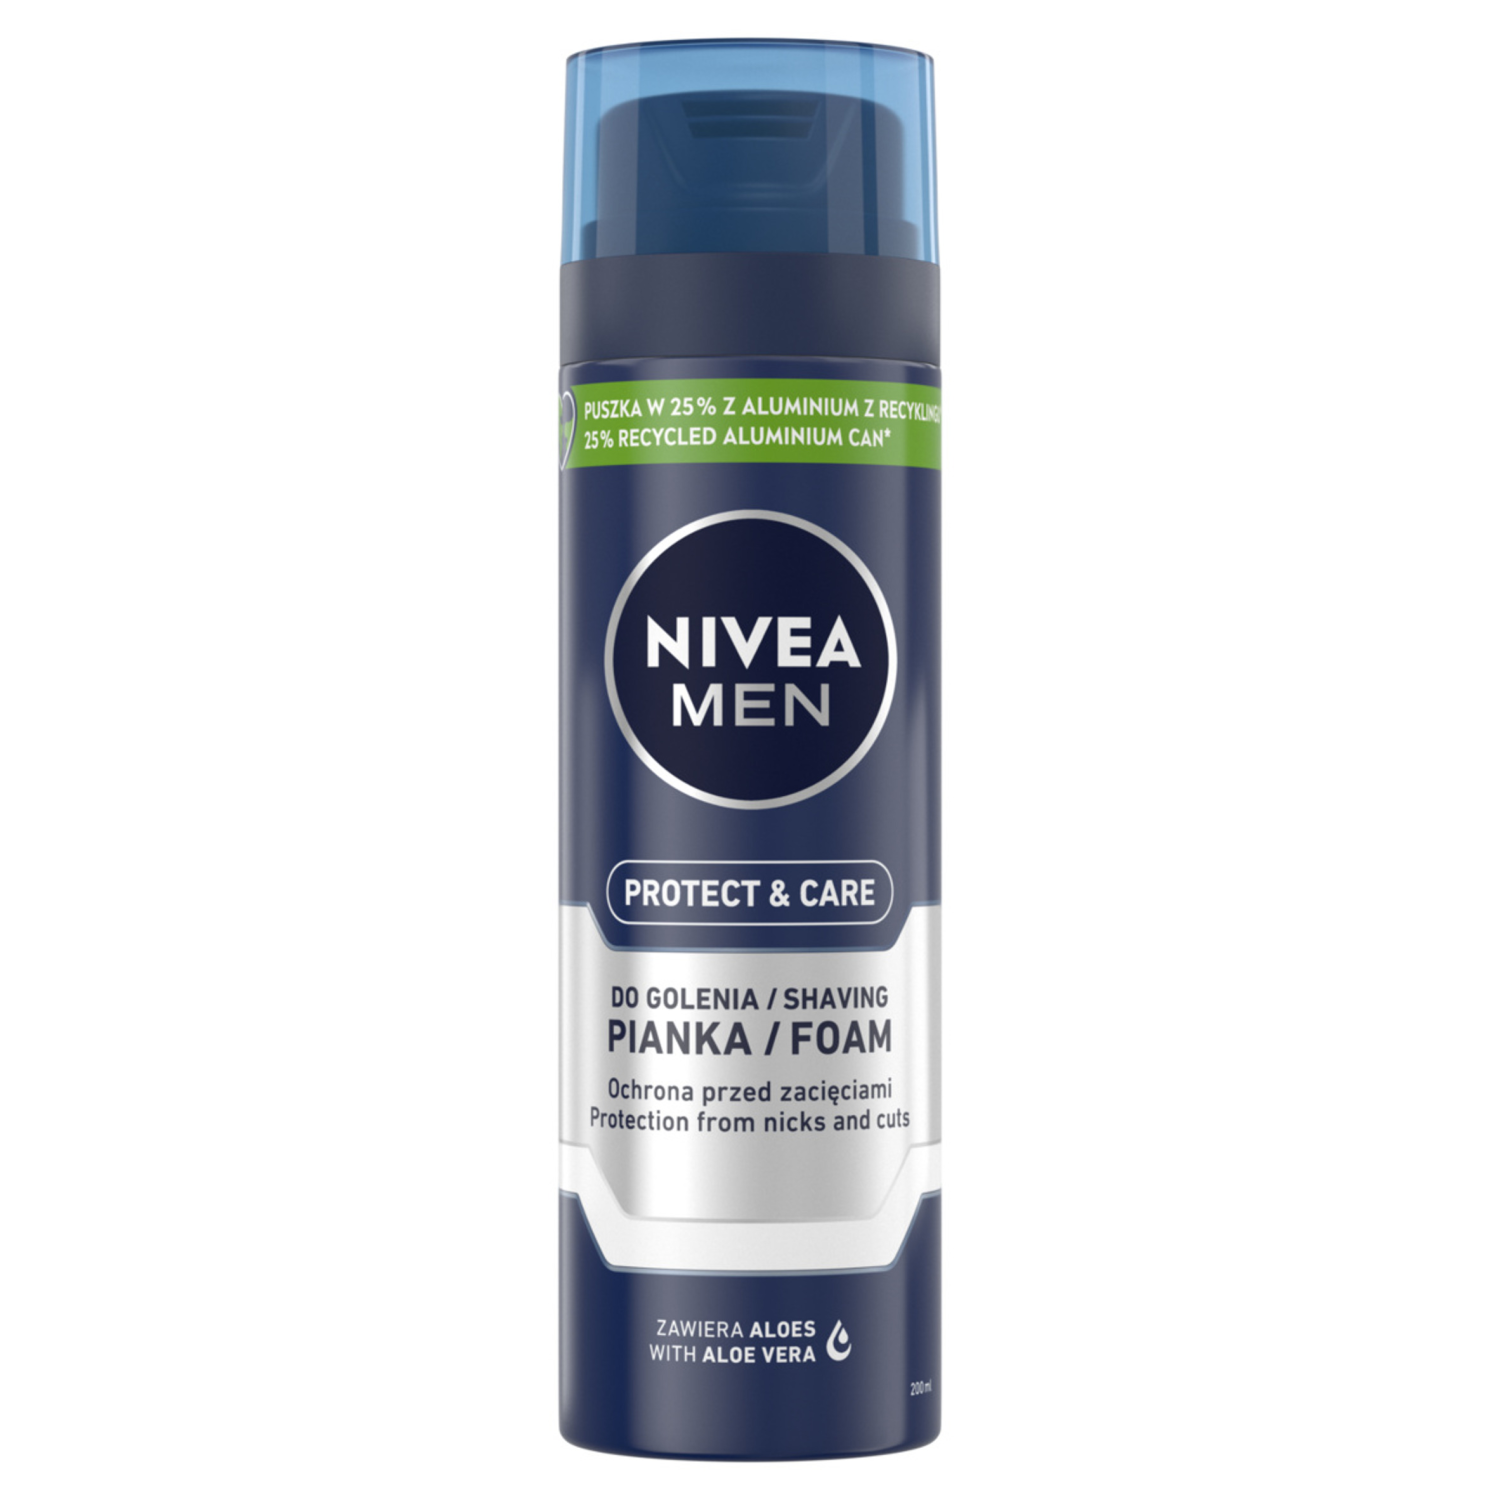 Nivea Men Protect & Care увлажняющая пена для бритья для мужчин, 200 мл увлажняющая пена для бритья nivea классическая 200 мл